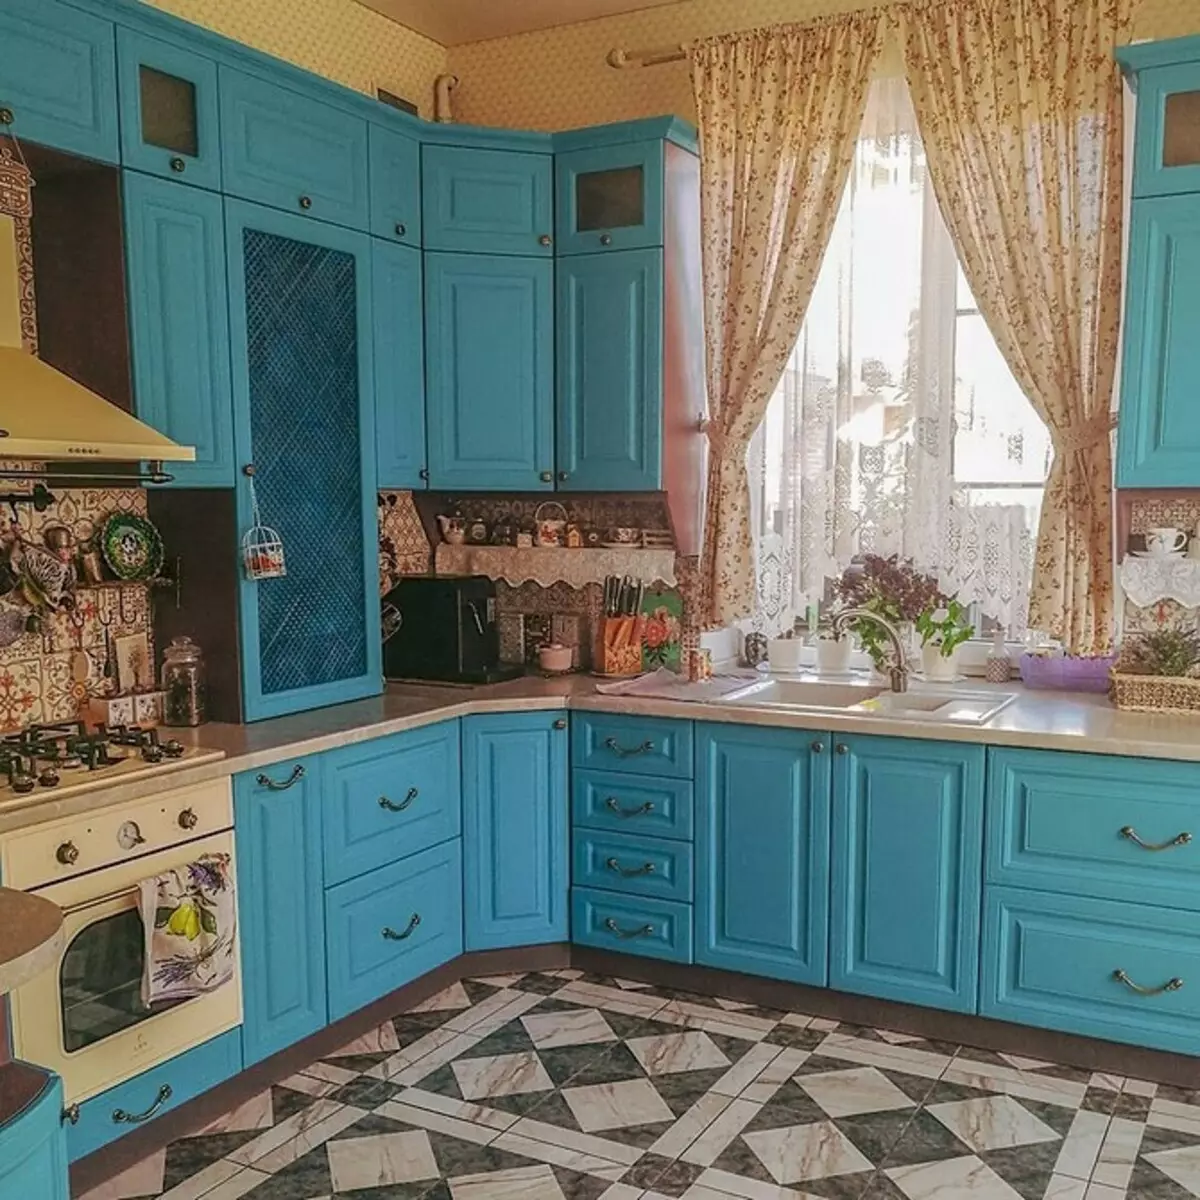 Rideaux dans la cuisine dans le style de Provence: Conseils pour choisir des modèles réels 7338_77